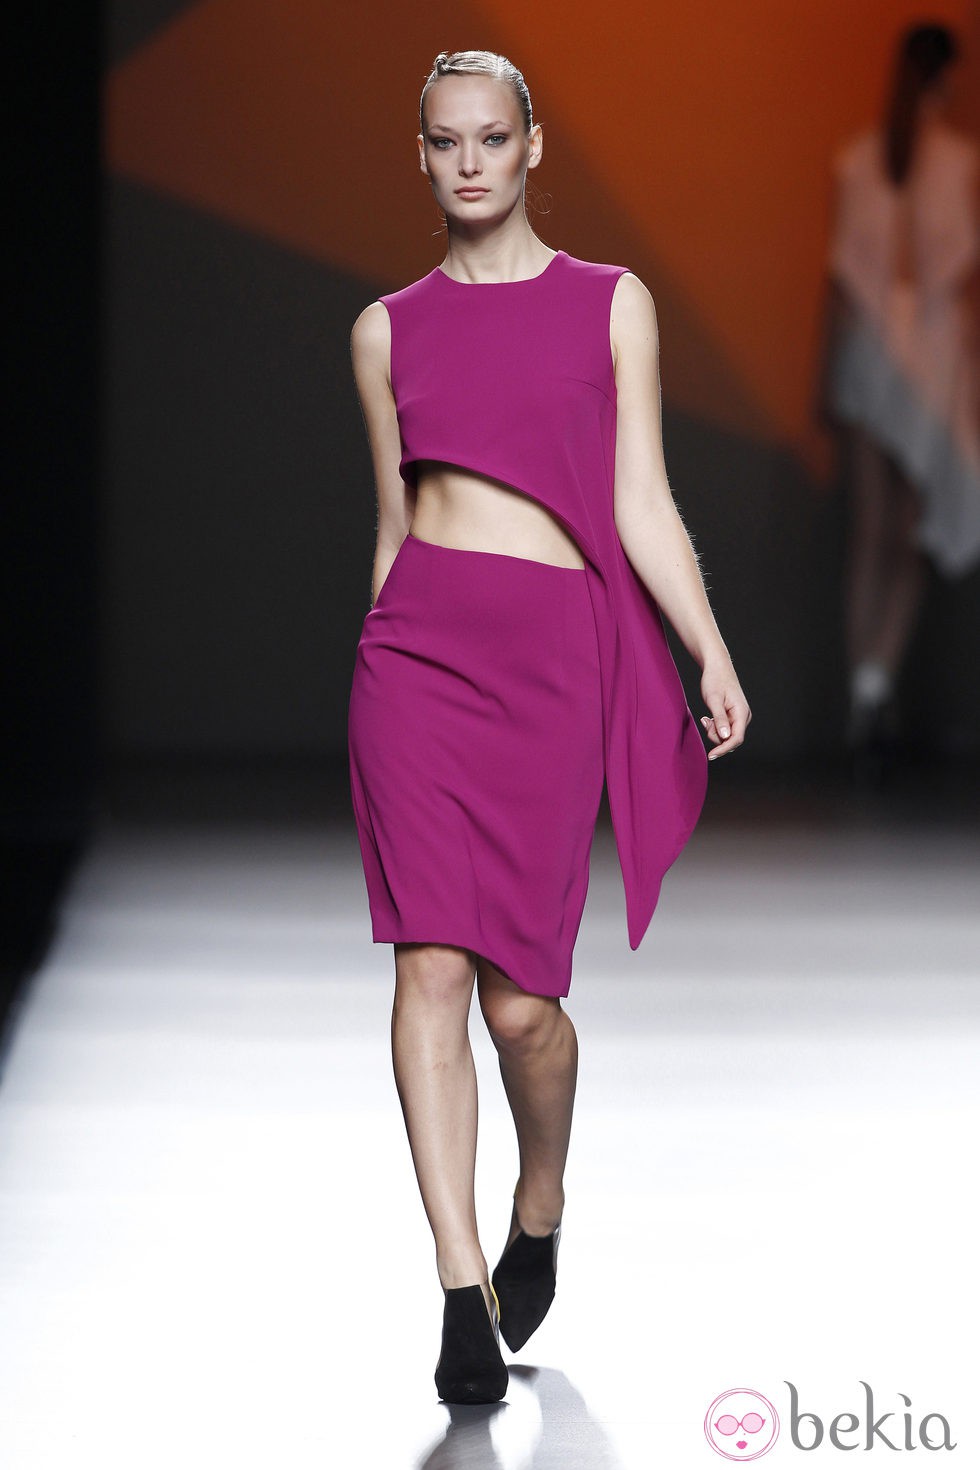 Vestido fucsia de la colección primavera/verano 2014 de AA de Amaya Arzuaga en Madrid Fahion Week